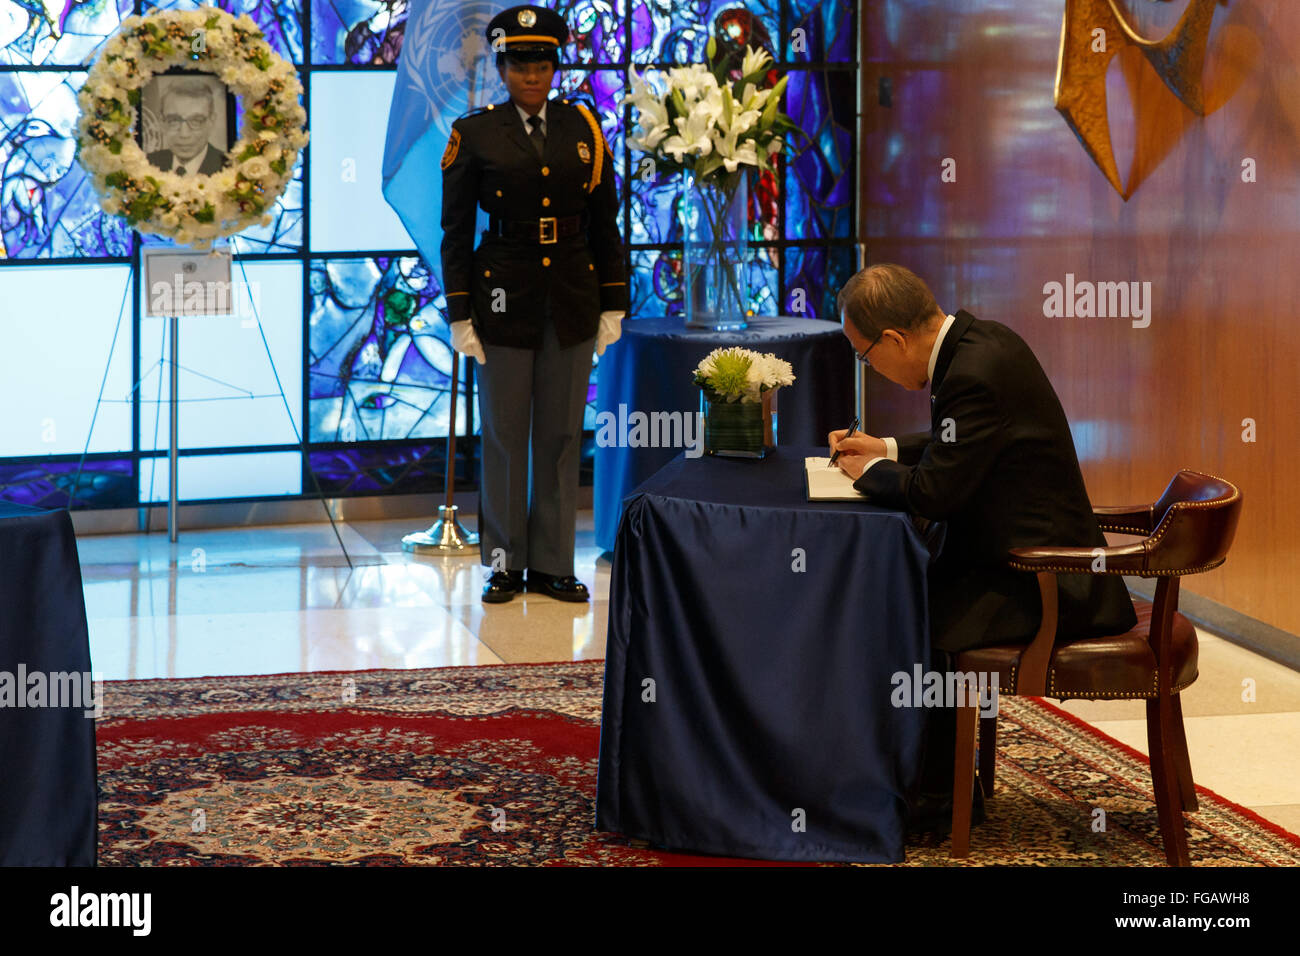 (160218) -- ORGANISATION DES NATIONS UNIES, le 18 février 2016 (Xinhua) -- Le secrétaire général des Nations Unies Ban Ki-moon, signe un livre de condoléances à la mémoire de l'ancien Secrétaire général Boutros Boutros-Ghali, au siège des Nations Unies à New York, le 18 février 2016. Ban Ki-moon, a rendu hommage jeudi à l'ancien chef de l'ONU, M. Boutros Boutros-Ghali, qui est mort mardi à l'âge de 93 ans. 'Boutros Boutros-Ghali avait à la fois la fortune et le malheur d'être le premier Secrétaire général de l'après-guerre froide de l'Organisation des Nations Unies", a déclaré Ban à la session de l'Assemblée générale à la mémoire de Boutros Boutros-Ghali. Boutros-Ghali de Eg Banque D'Images